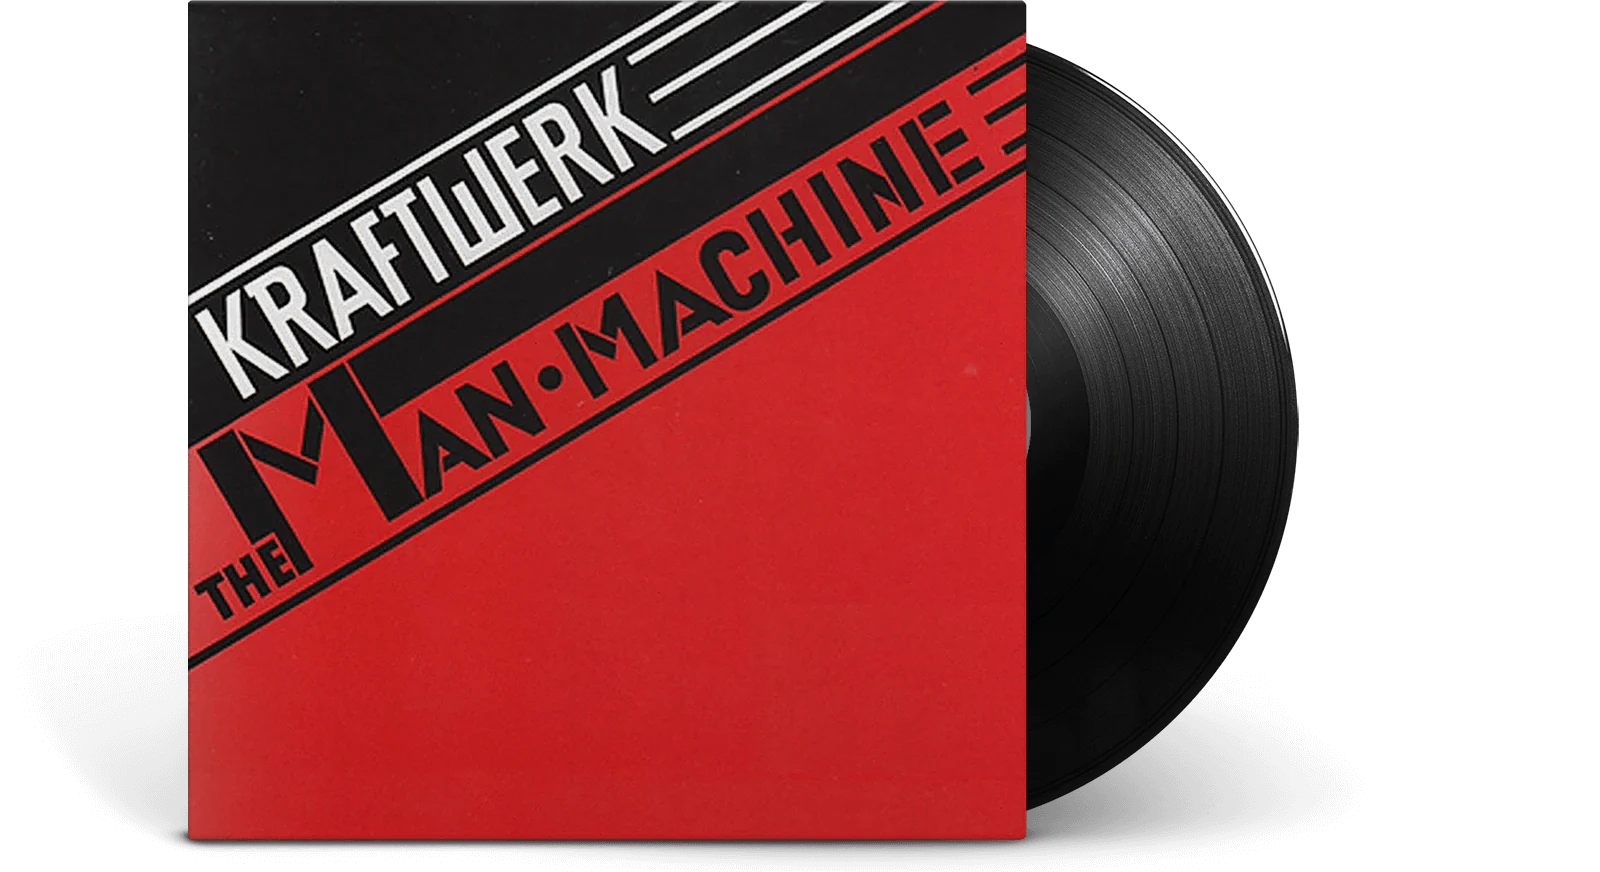 Kraftwerk - The Man Machine LP